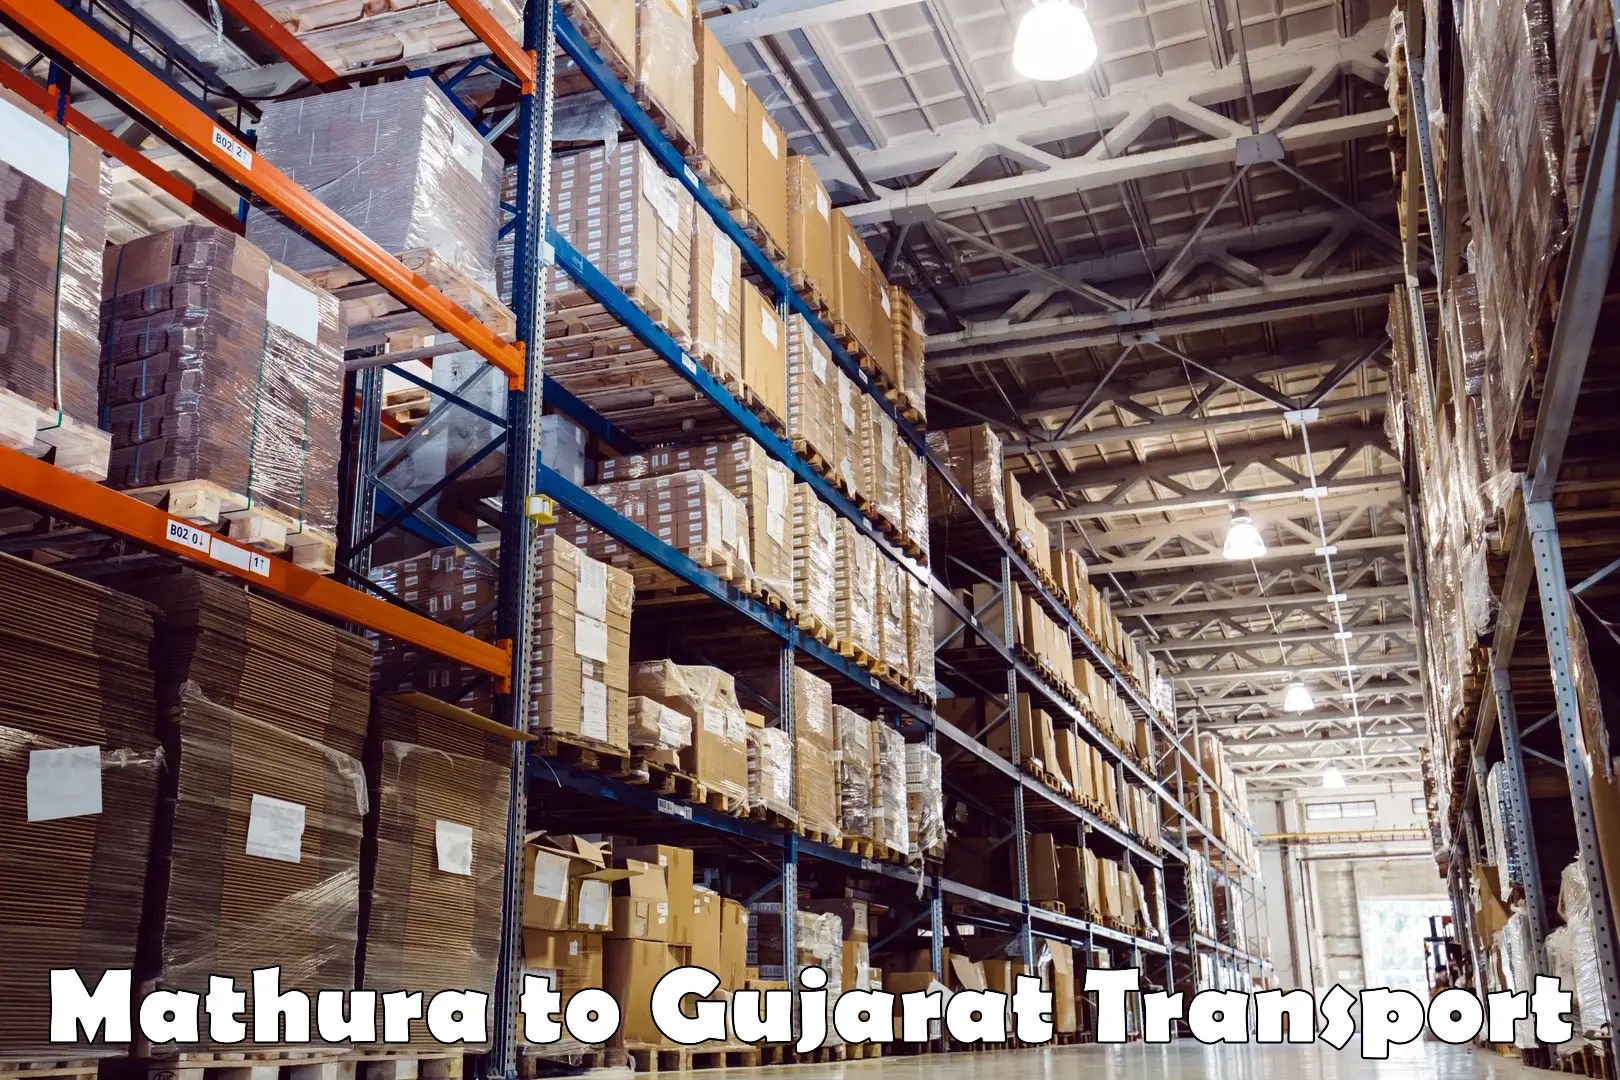 Bike shipping service Mathura to Gujarat